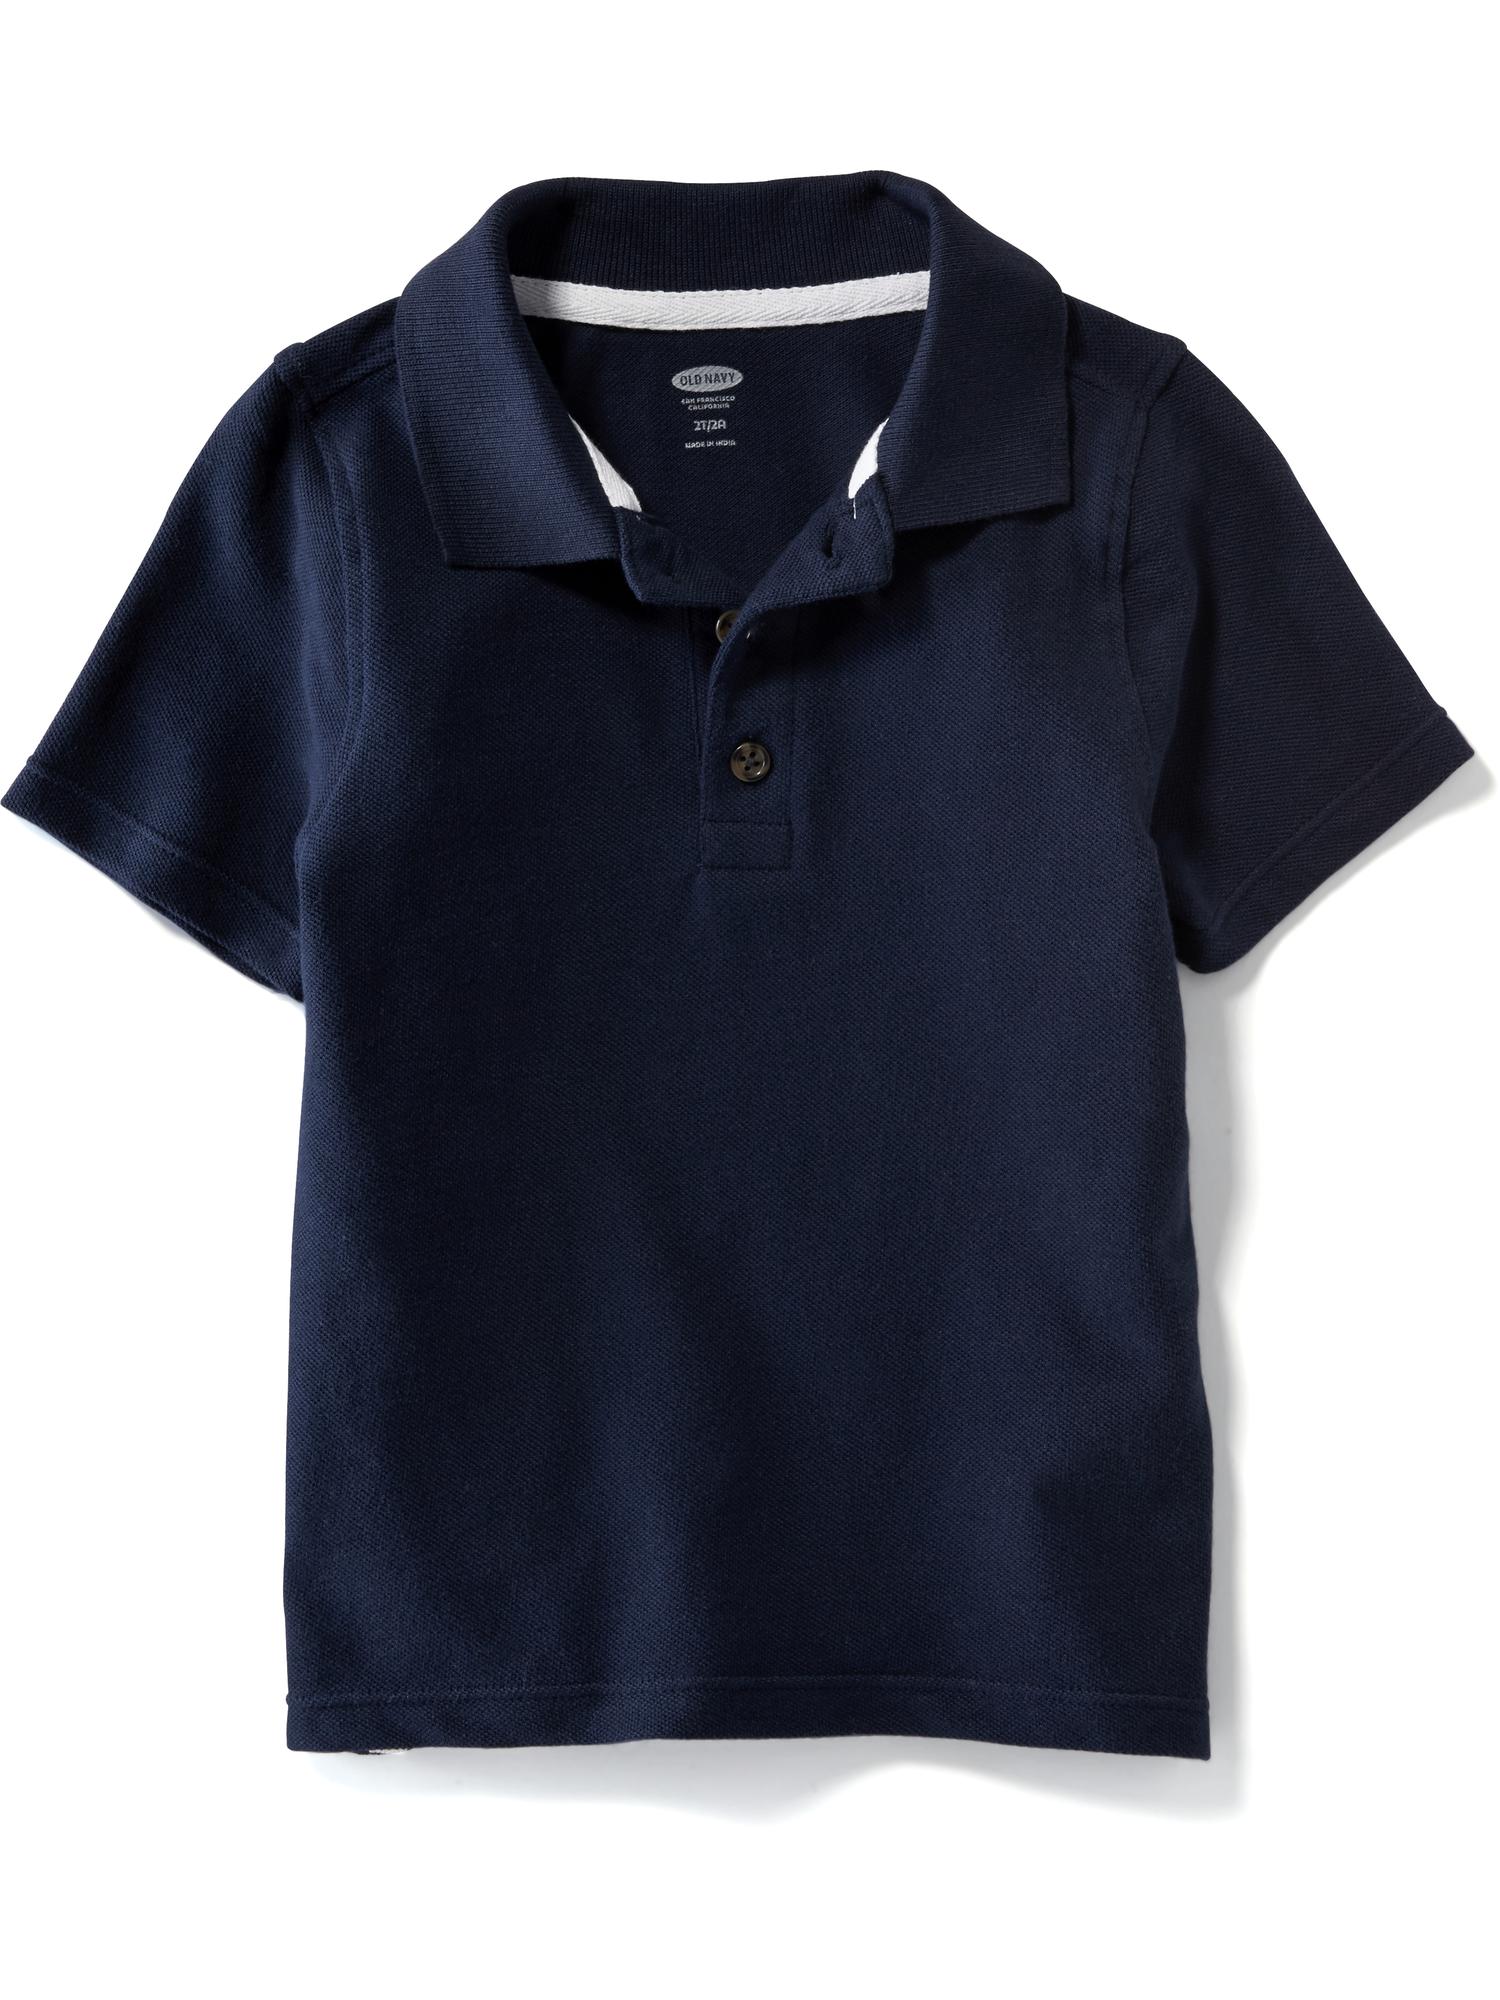 Uniform Pique Polo for Toddler Boys | Old Navy